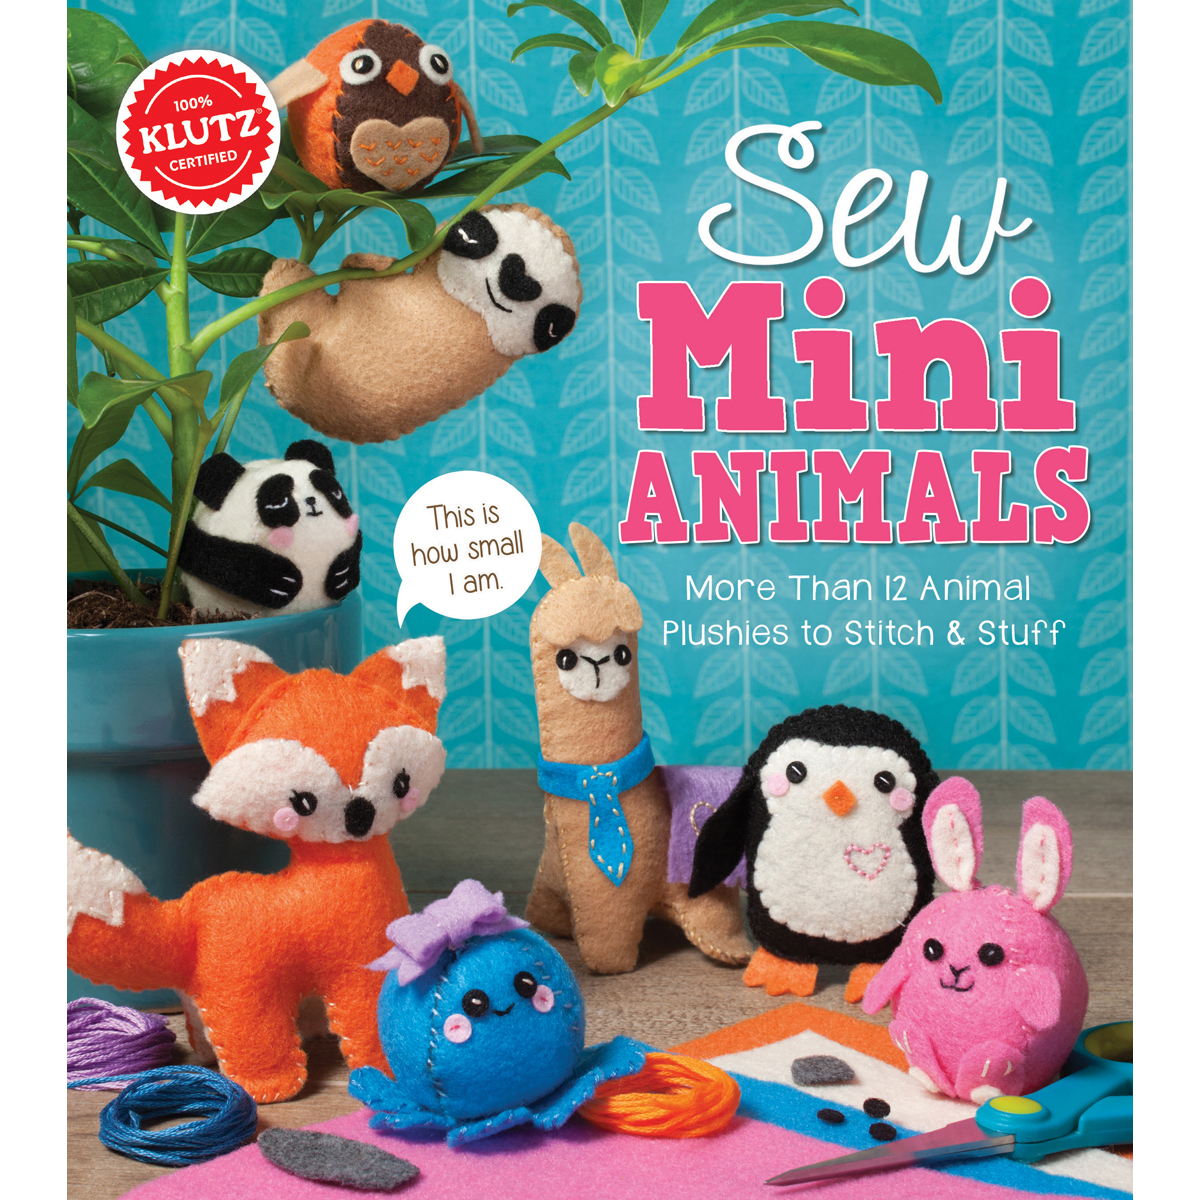 K810644 Sew Mini Animals Kit